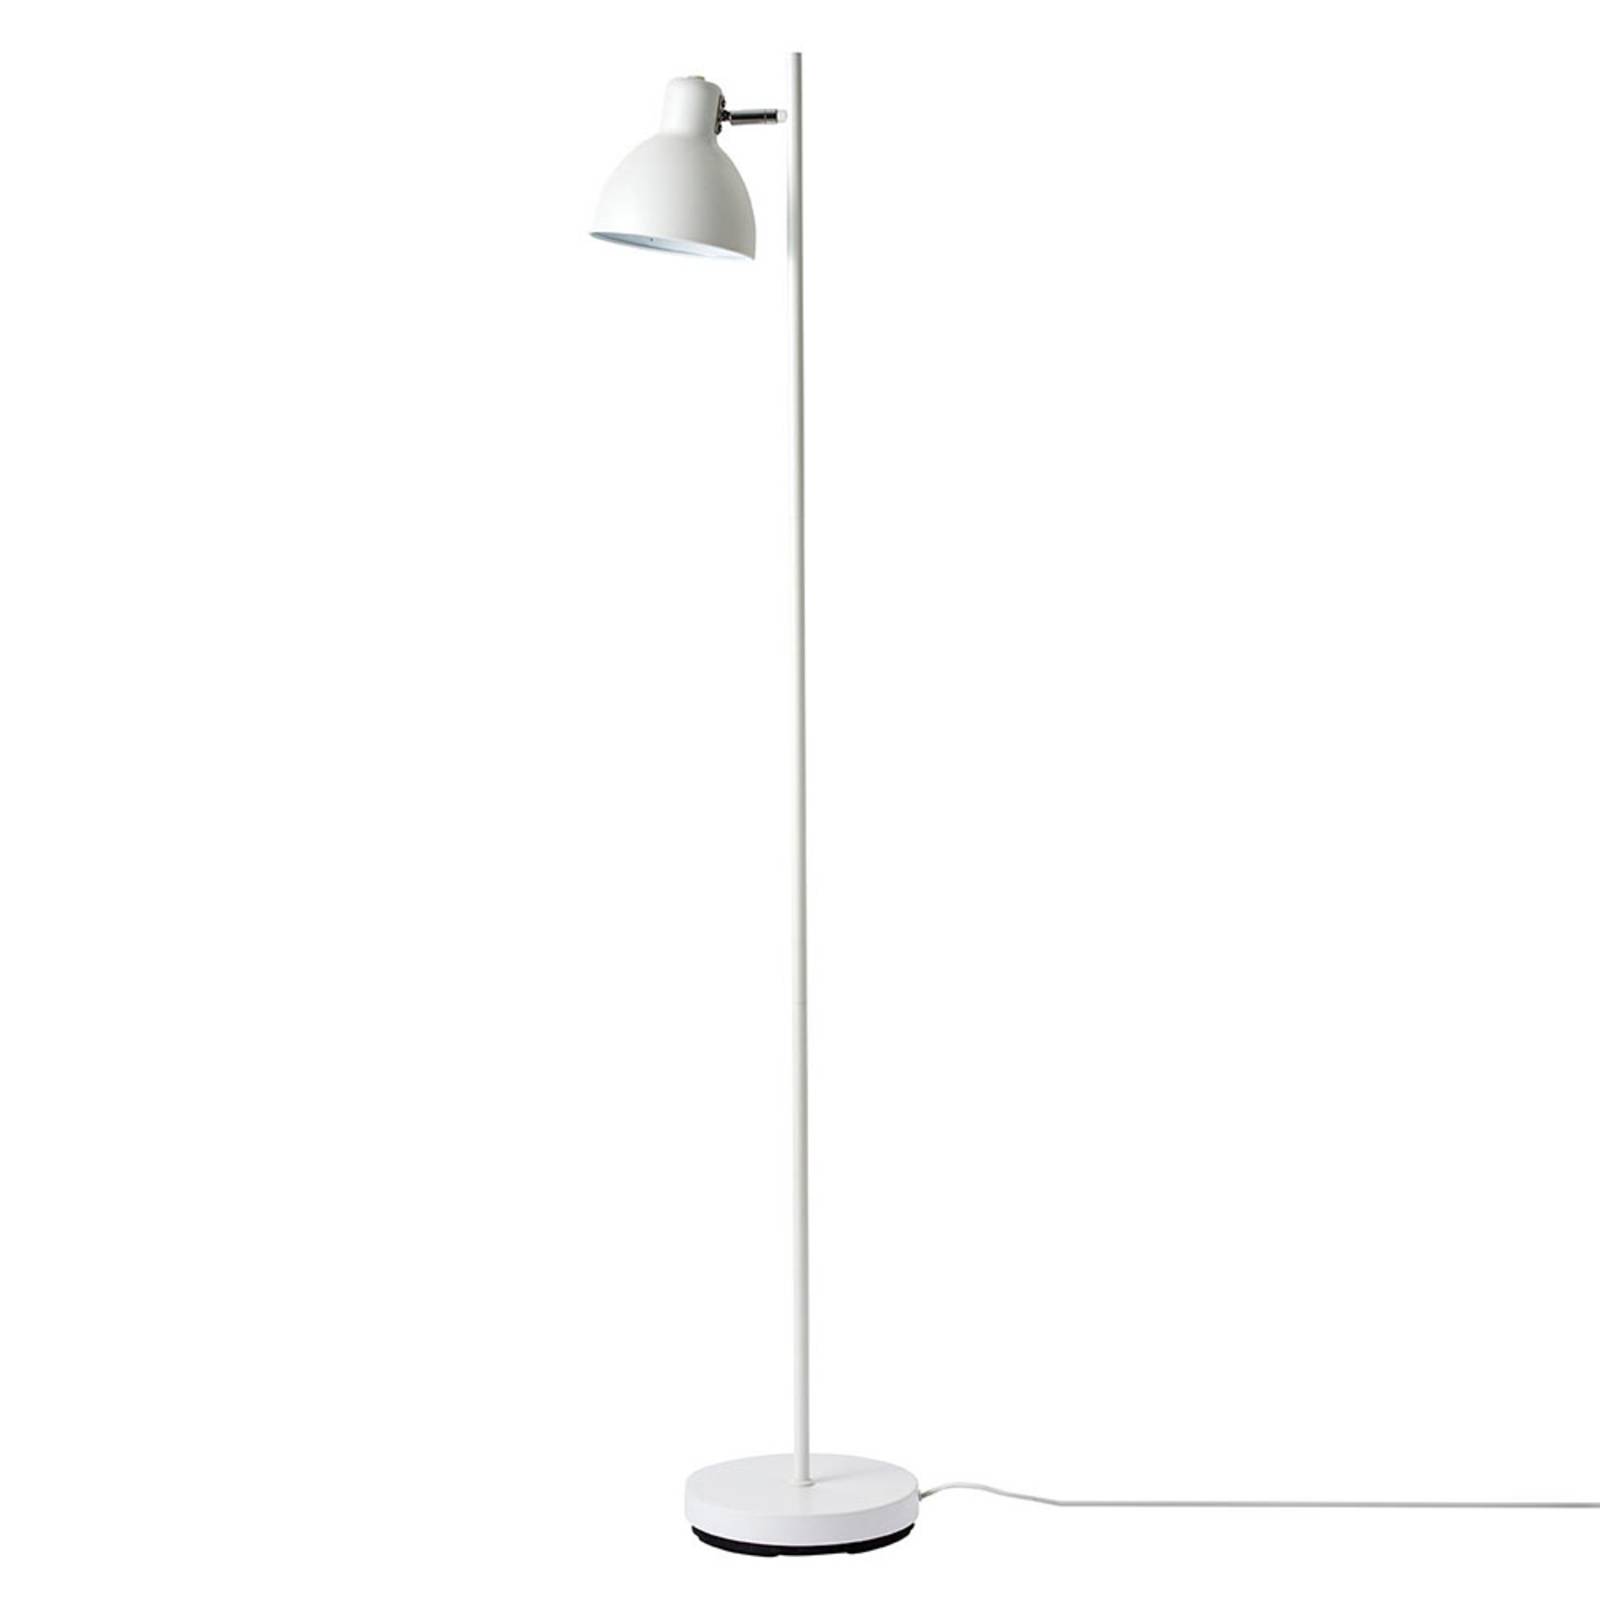 Dyberg Larsen Skagen 1 vloerlamp 1-lamp, wit